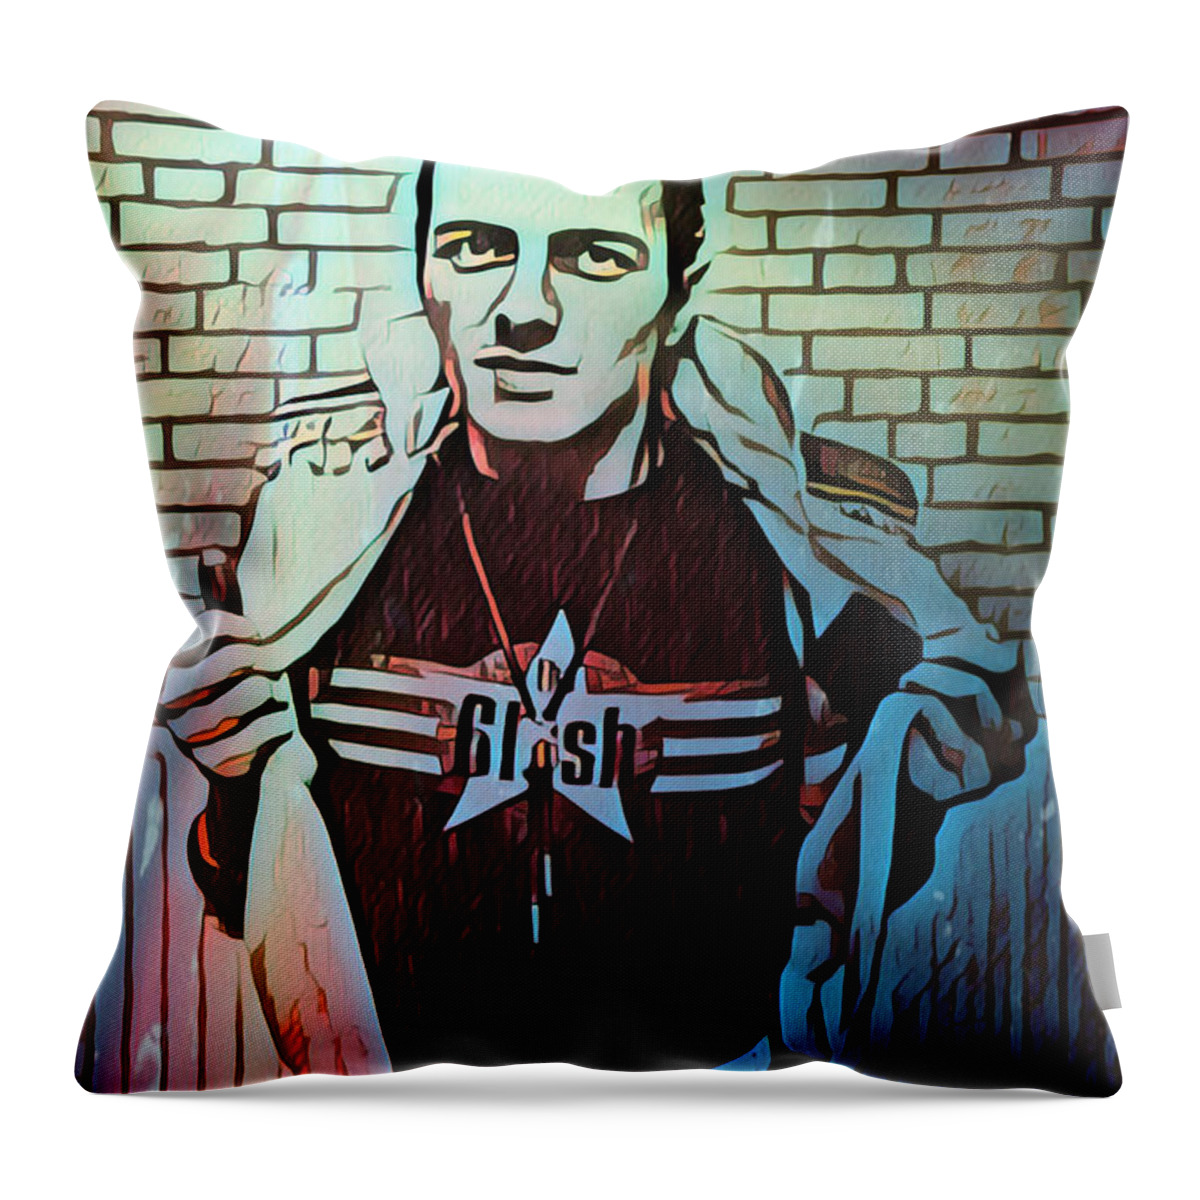 Joe Strummer Throw Pillow featuring the digital art Joe Strummer Portrait by Christina Rick